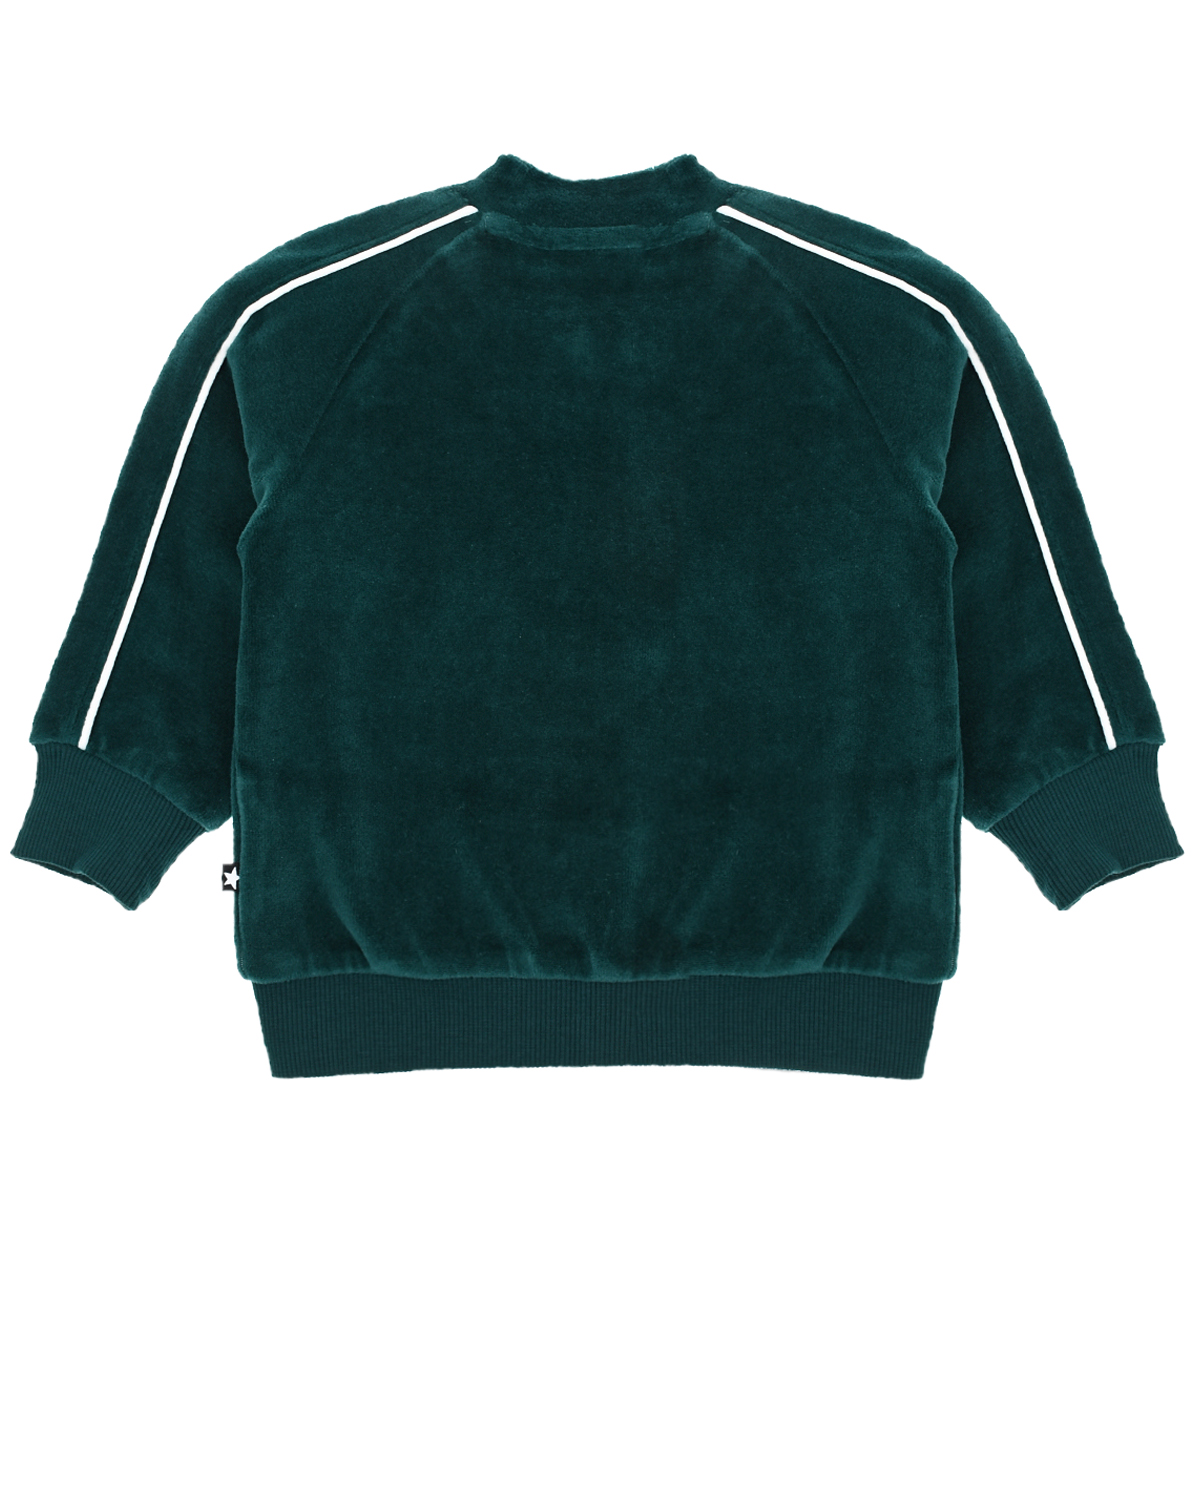 Зеленая спортивная куртка из велюра Molo детская, размер 80, цвет зеленый - фото 2